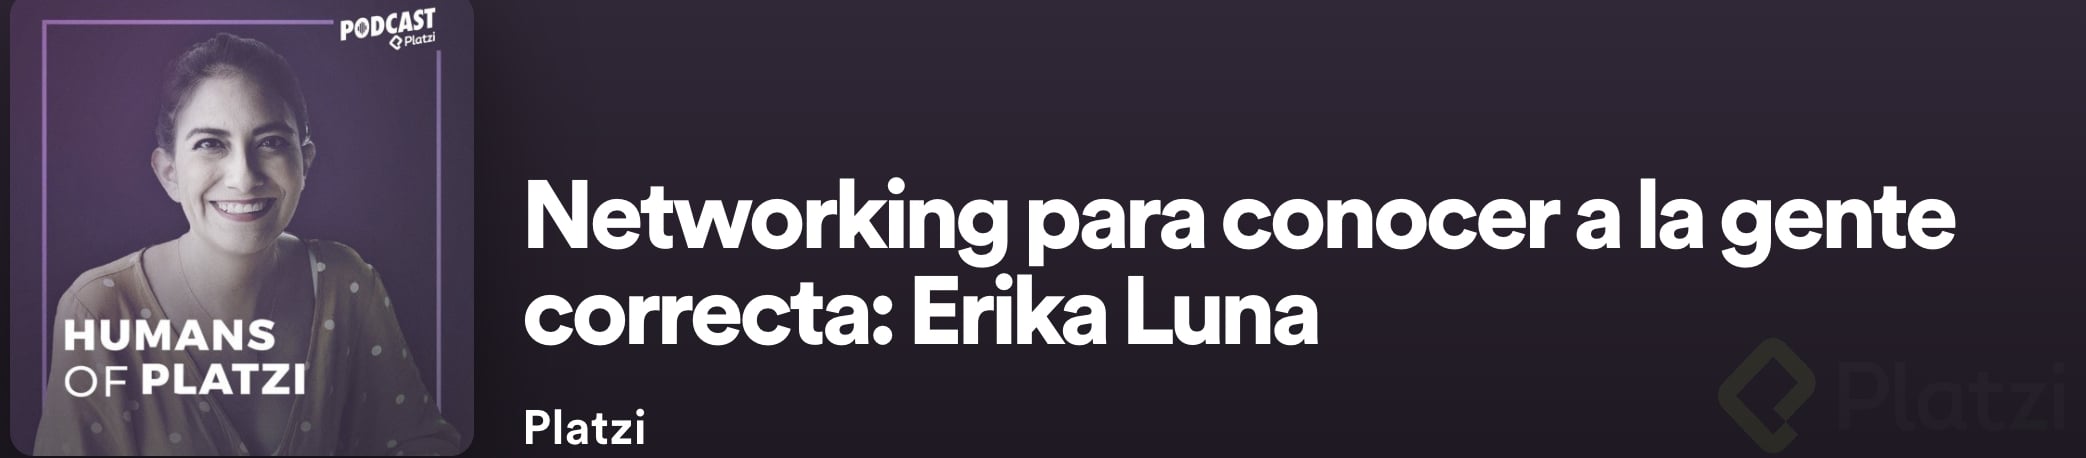 humans-platzi-Erika-Luna.png